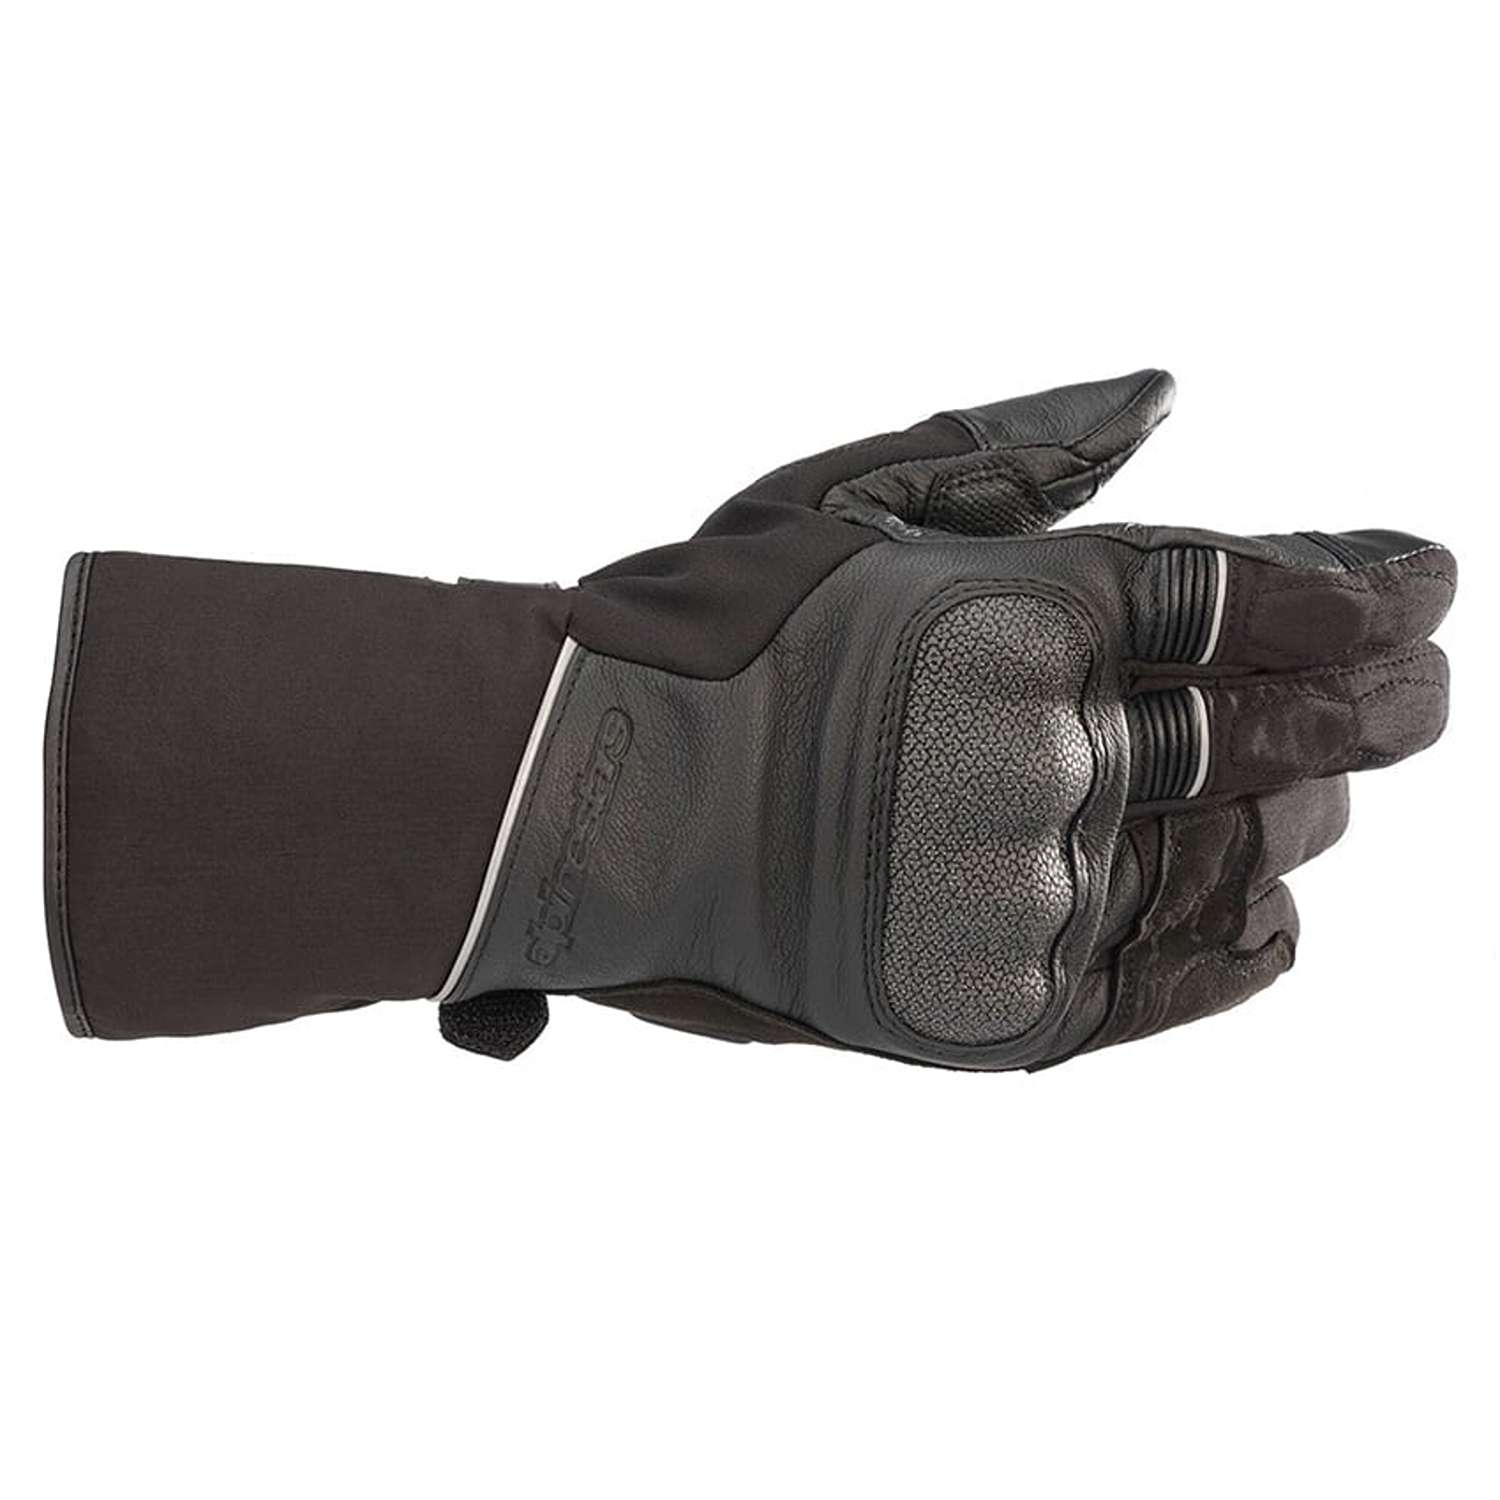 Image of Alpinestars Wr-2 V2 Gore-Tex Gloves With Gore Grip Technology Black Größe 2XL